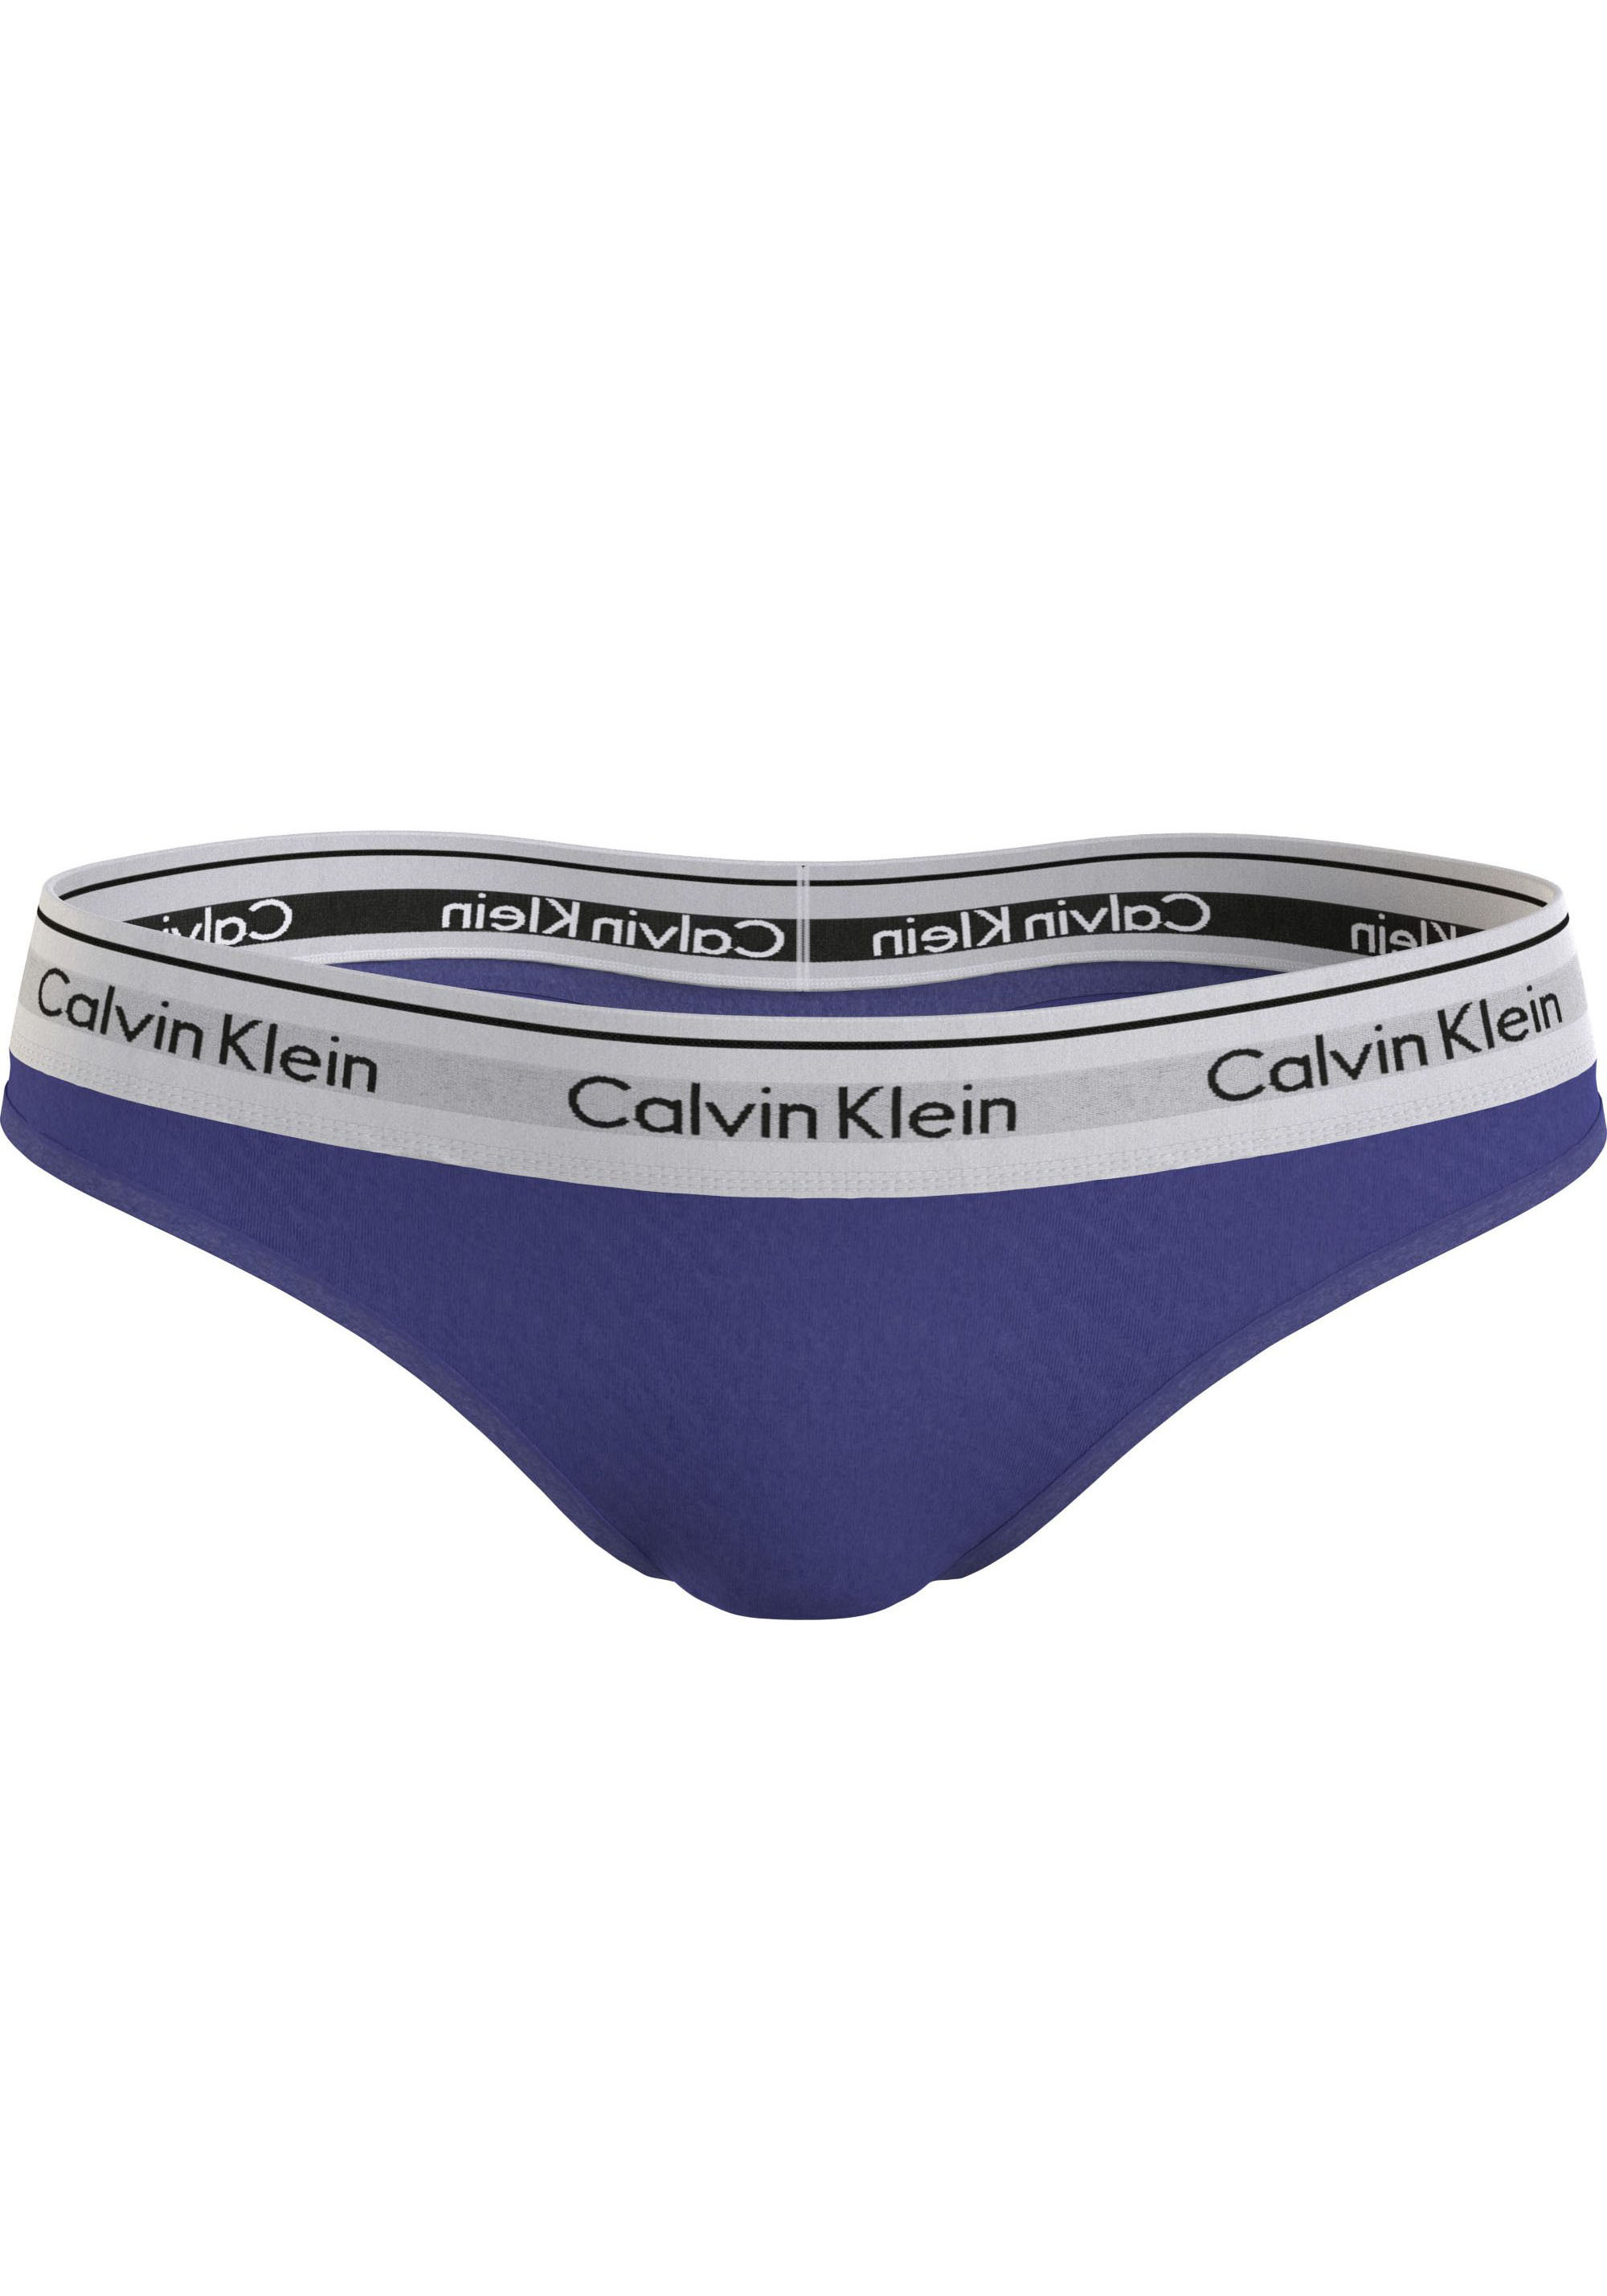 Calvin Klein versandkostenfrei (FF)«, Bralette-BH Plus BRALETTE in Grössen auf Size »UNLINED